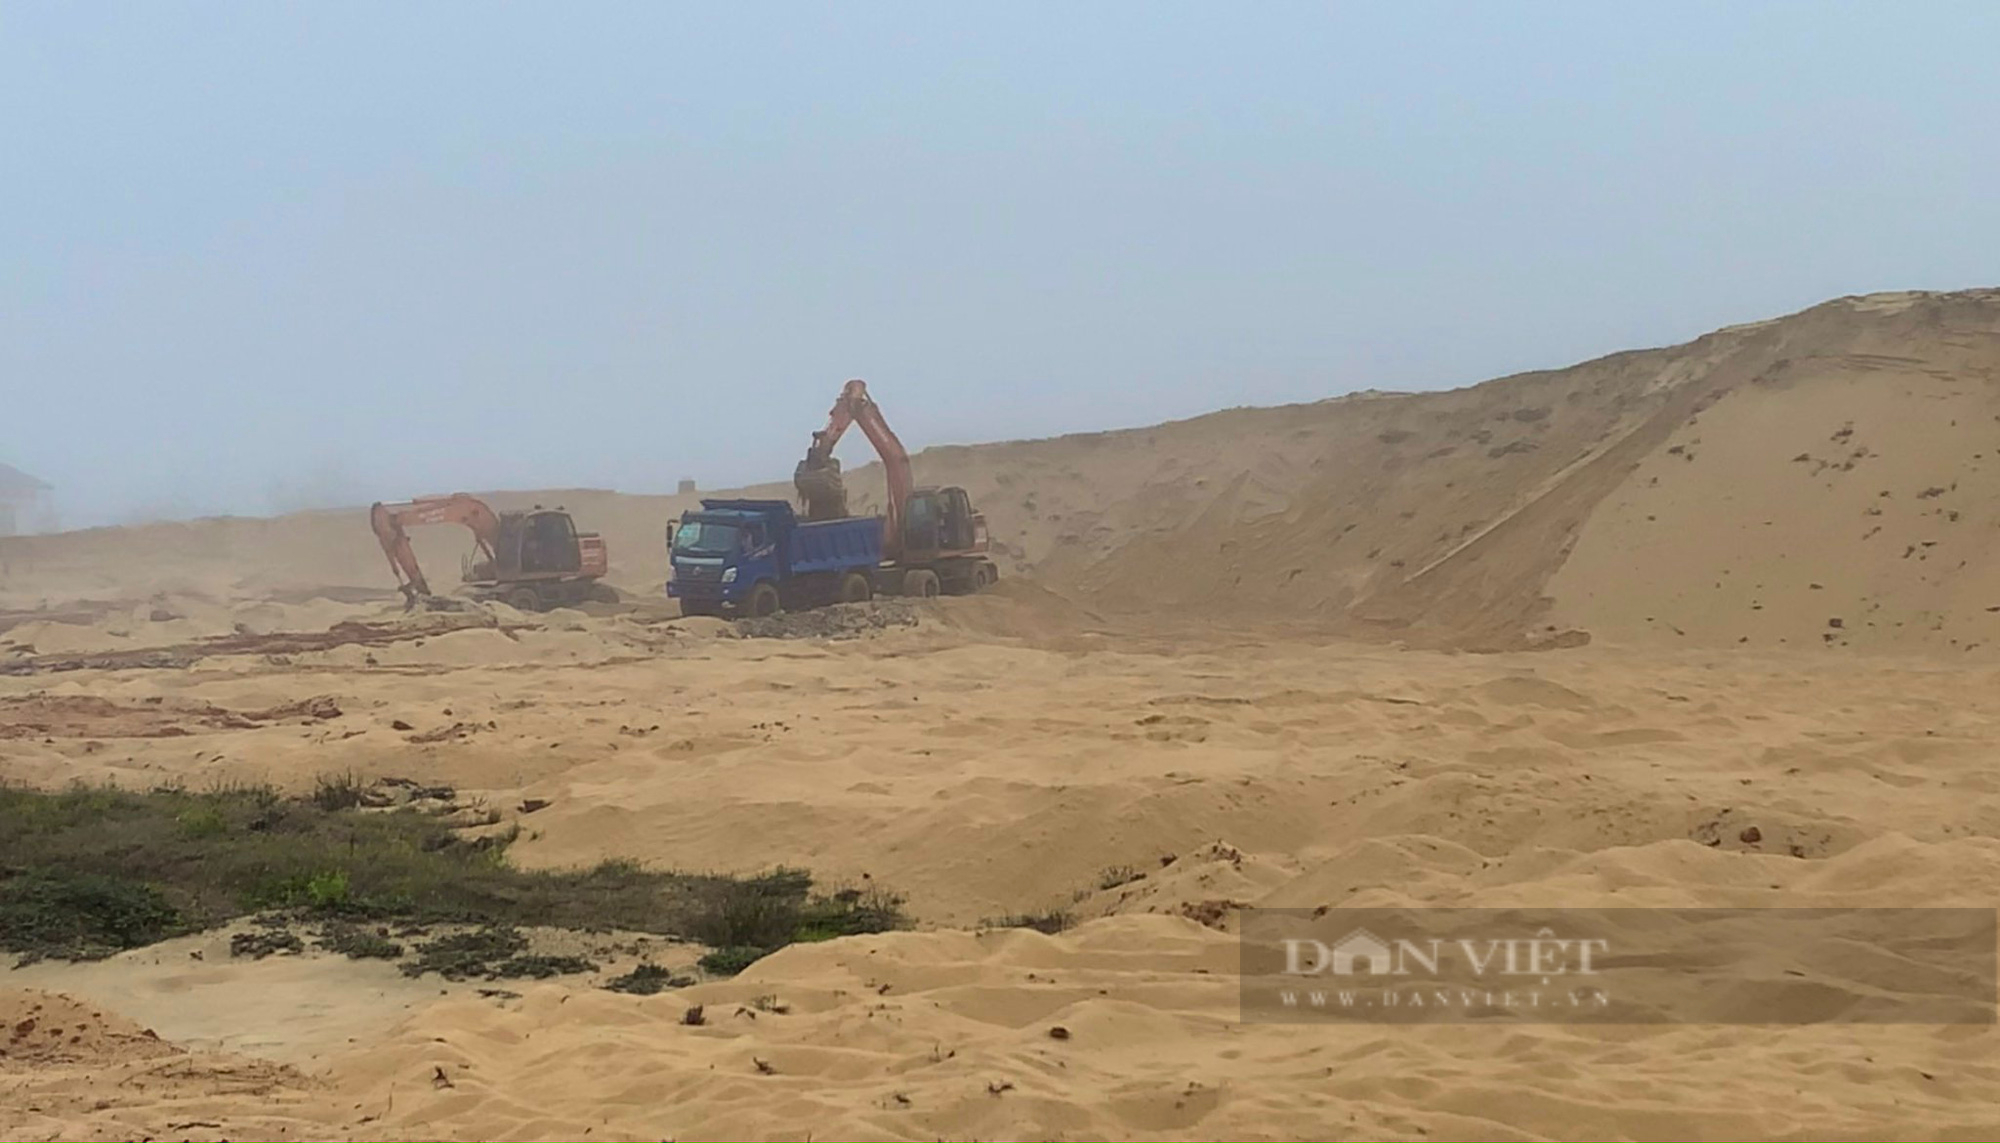 Dự án hạ tầng gần 15 tỷ đồng ở Quảng Bình chưa đủ điều kiện thi công đã khai thác cát rầm rộ  - Ảnh 3.